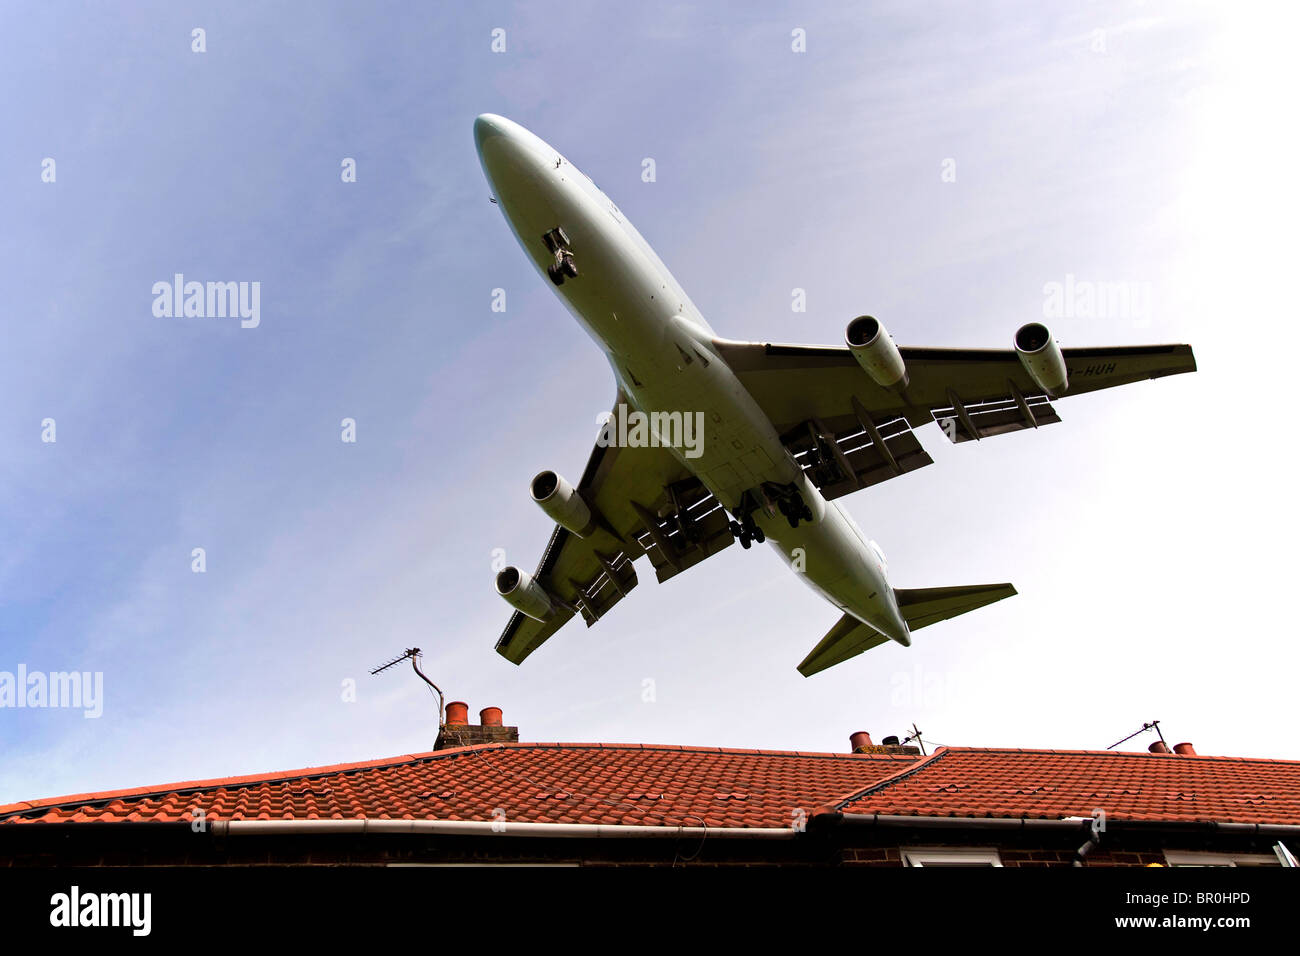 L'atterrissage d'un Boeing 747 jumbo jet au-dessus des toits de la maison à l'extrémité de la piste à l'aéroport de Manchester. Banque D'Images